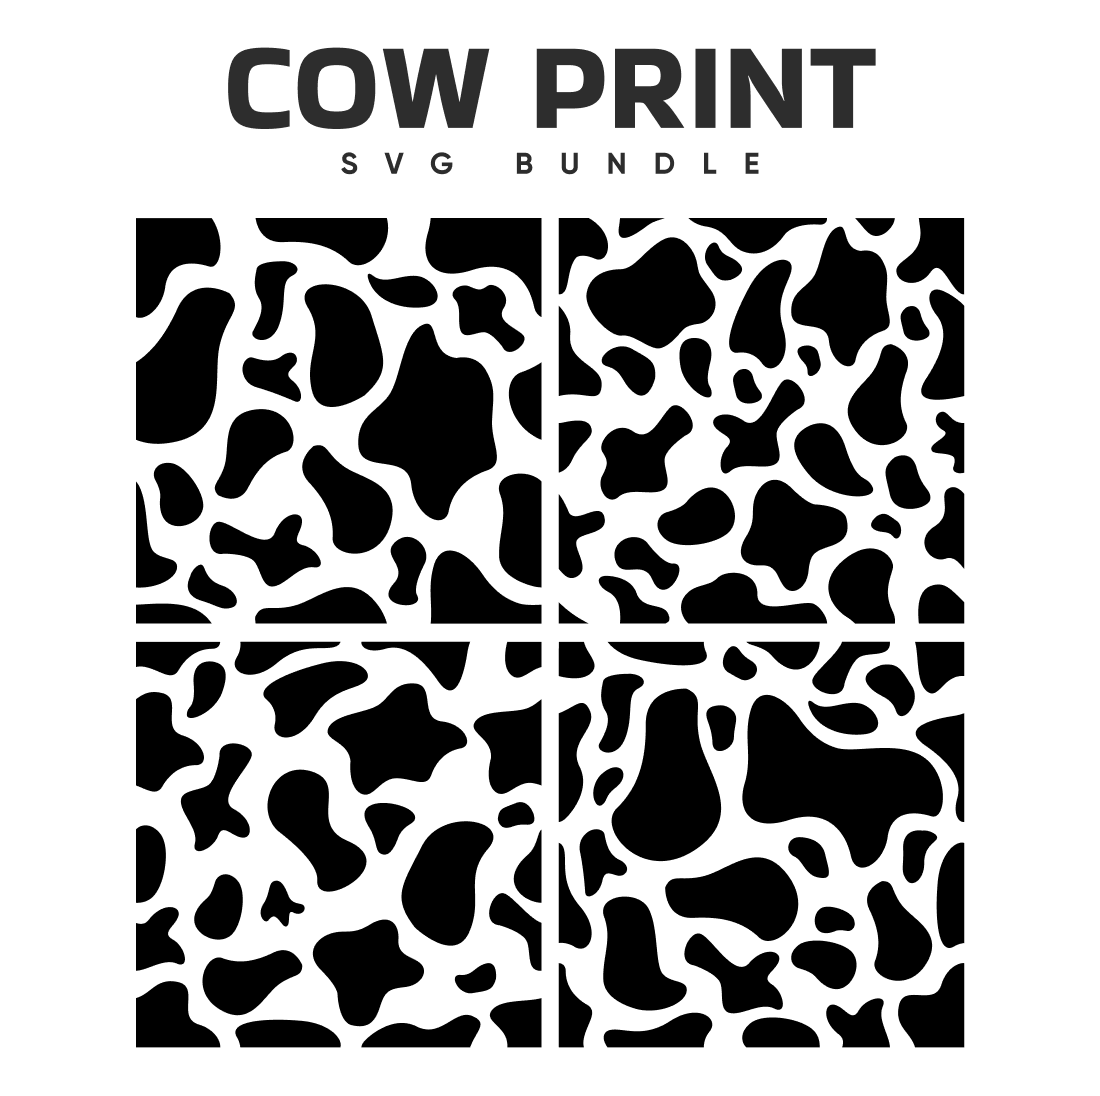 The cow print svg bundle.